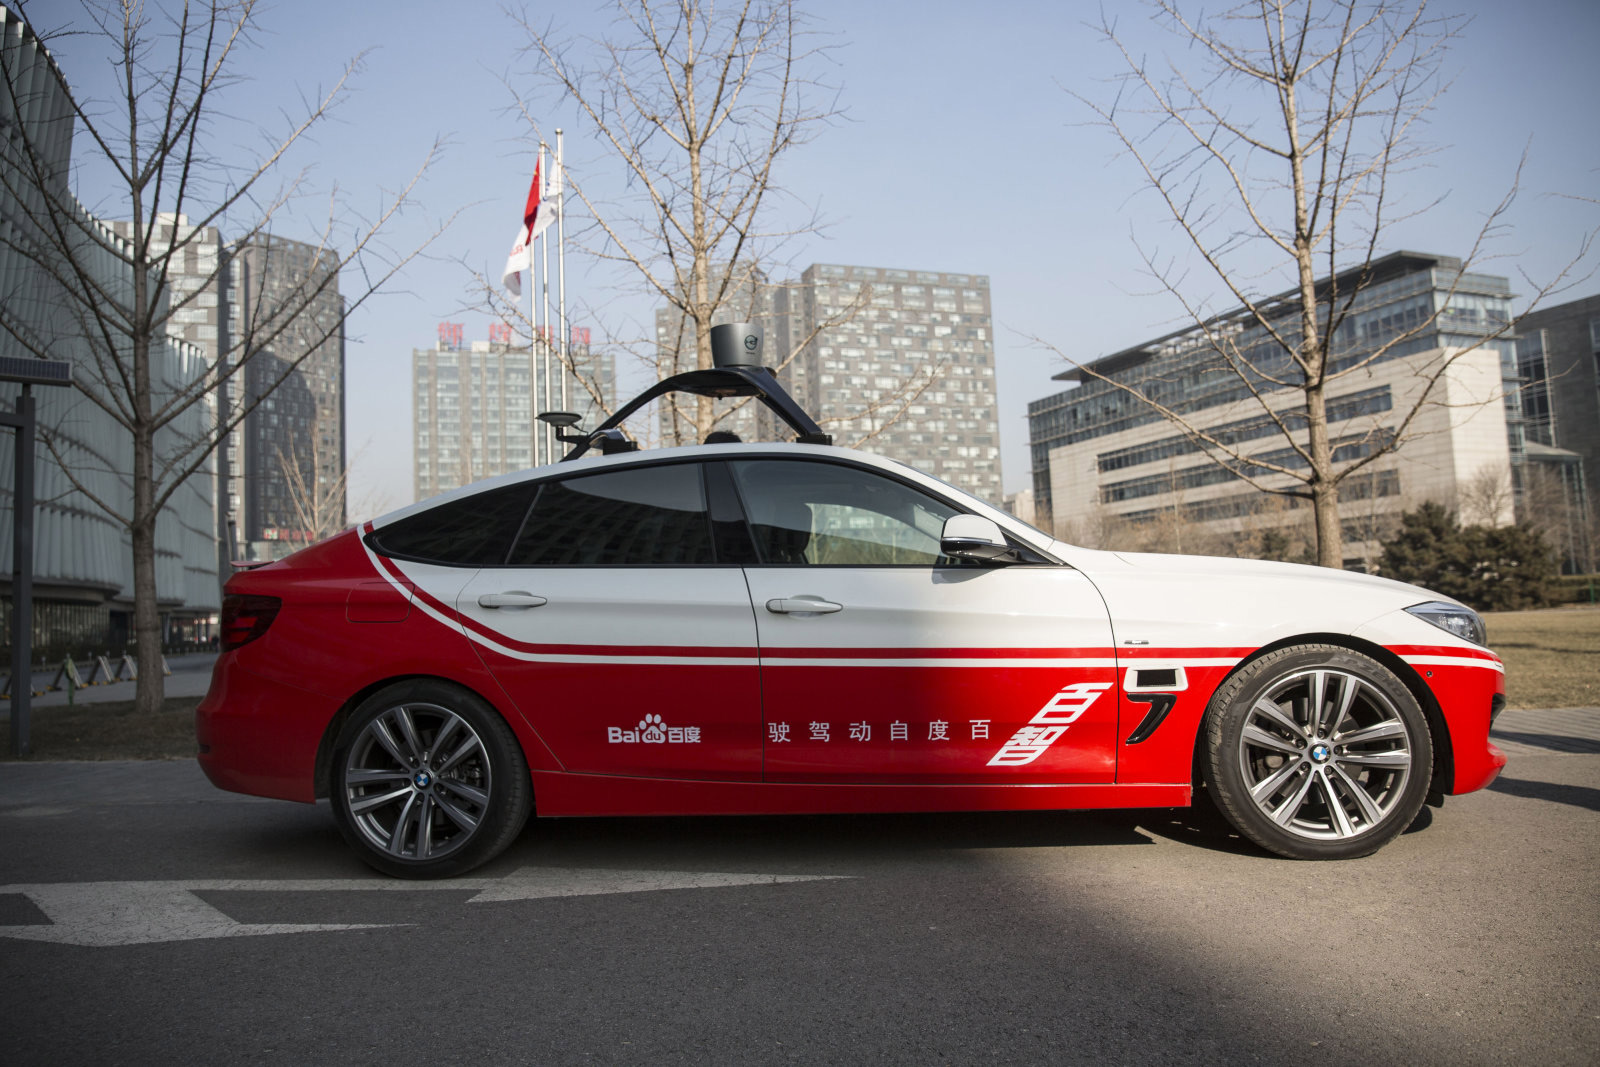 China Baidu autonomous car